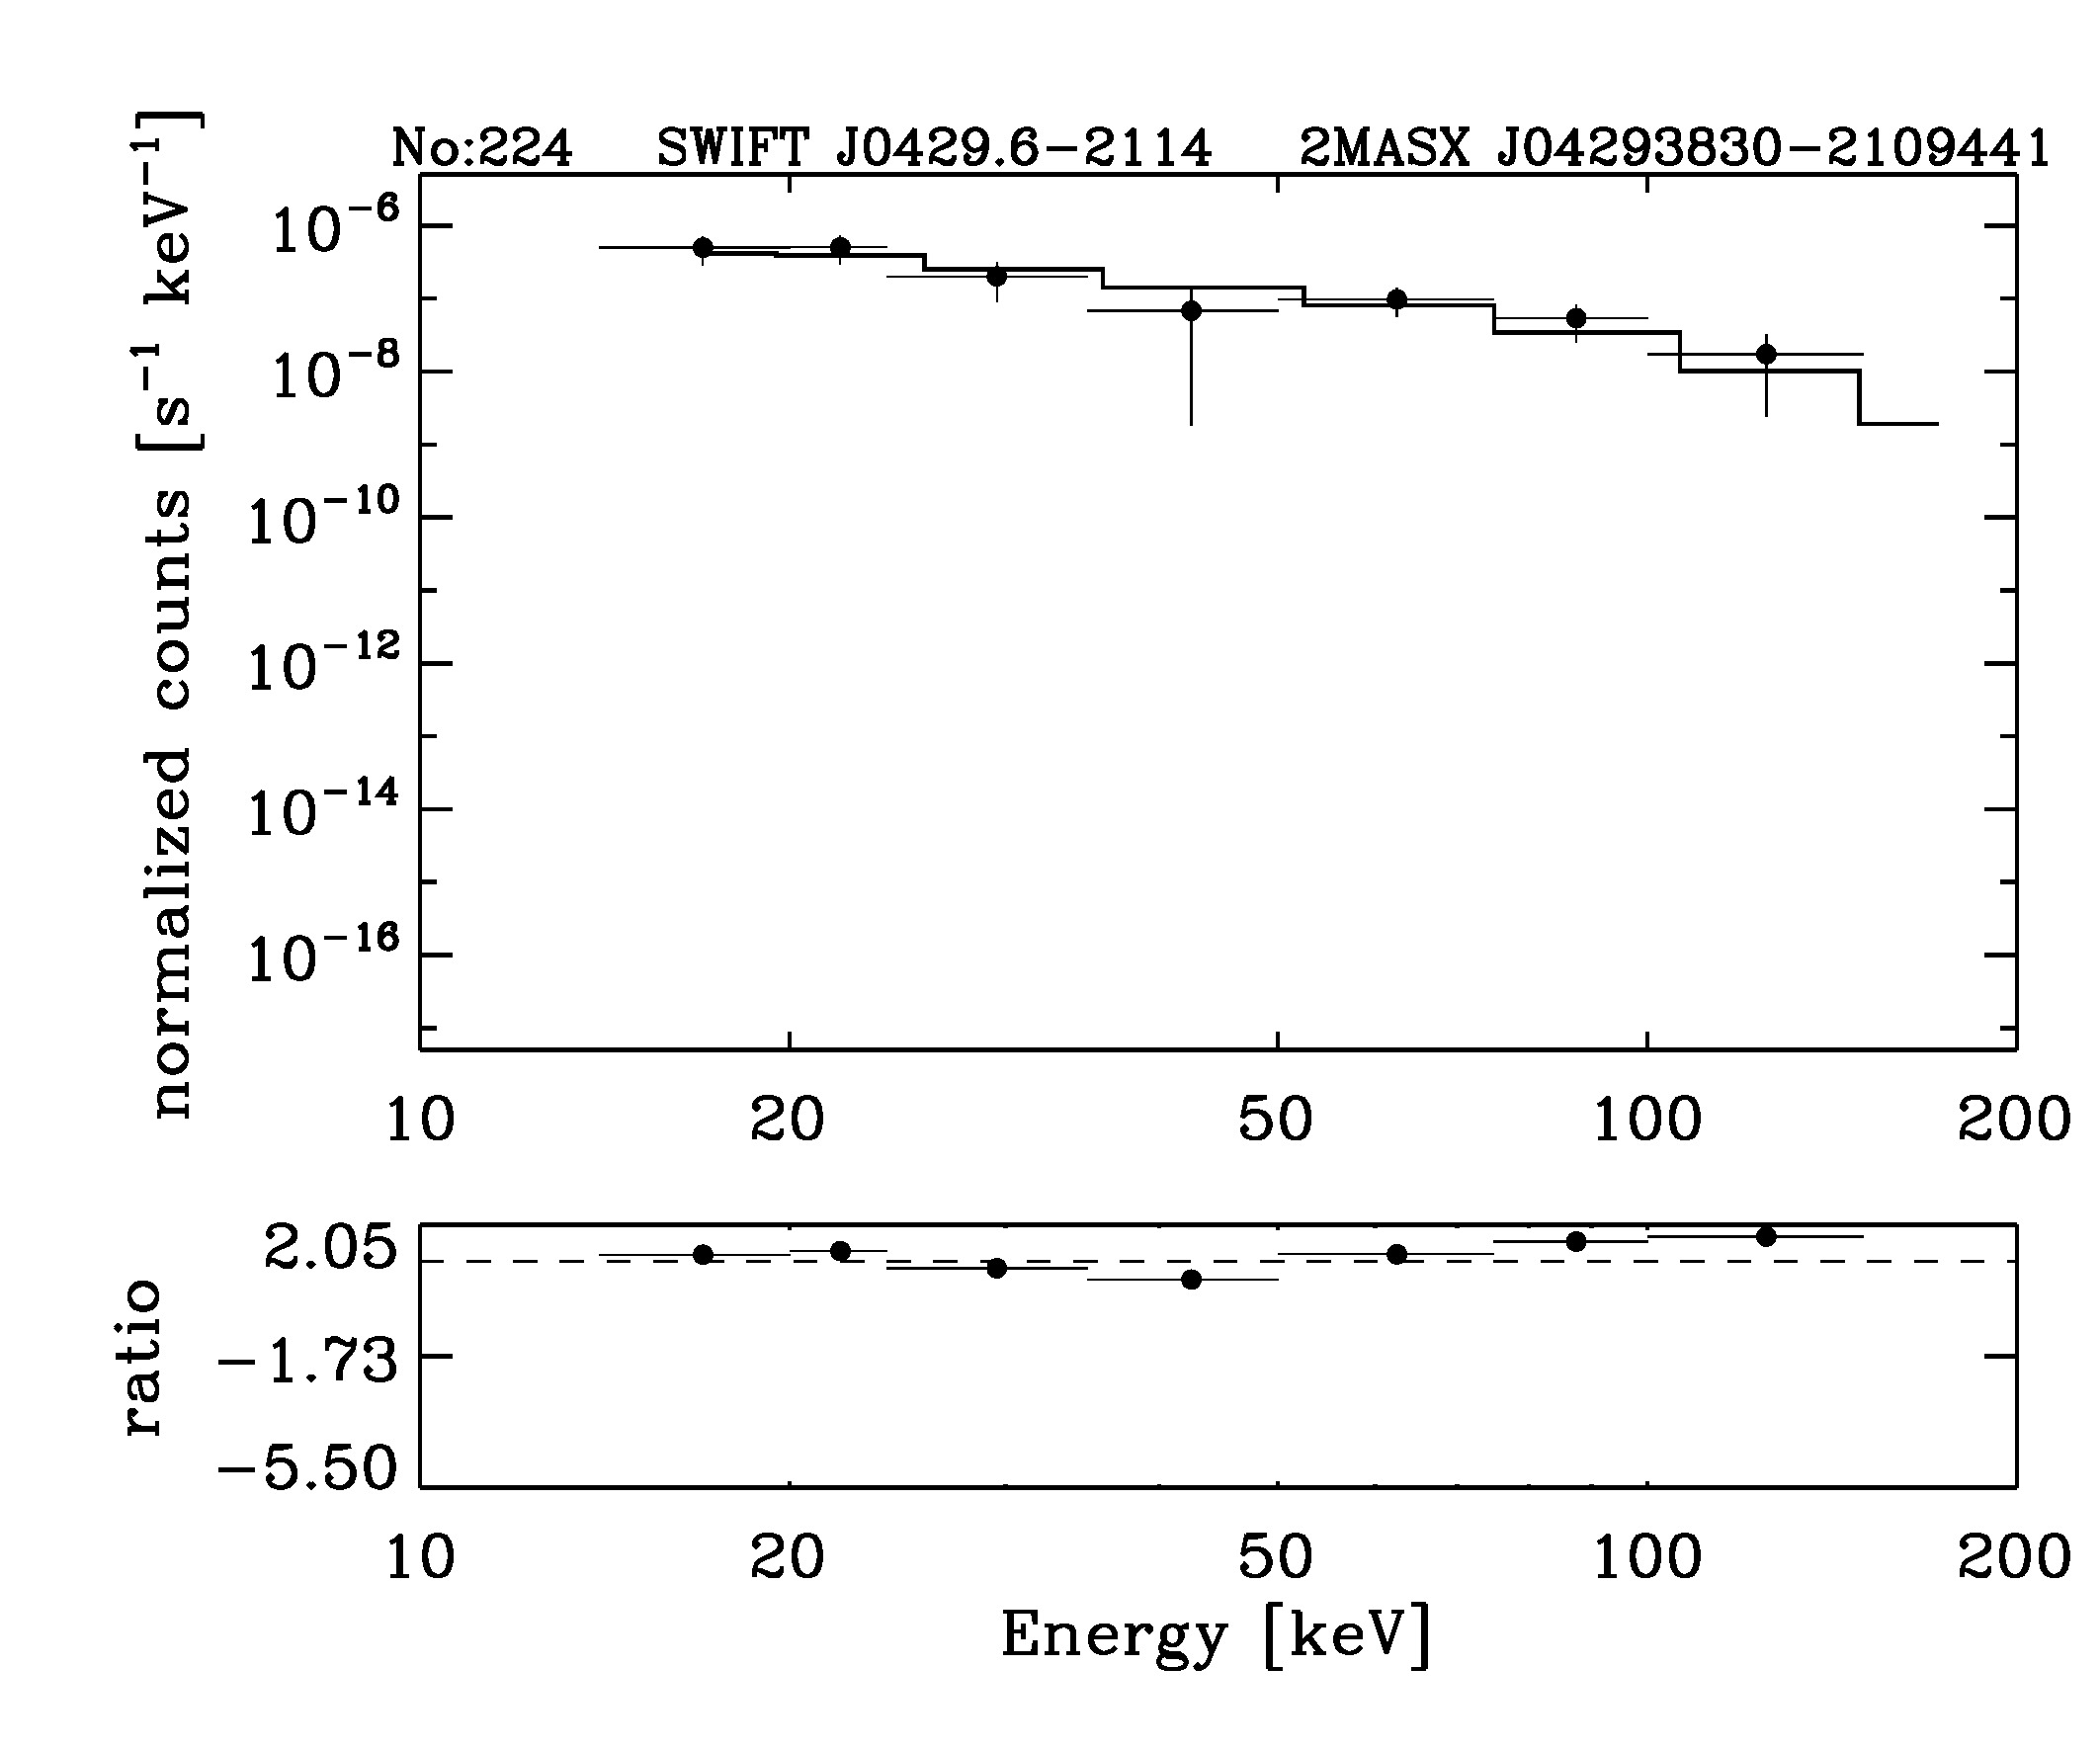 BAT Spectrum for SWIFT J0429.6-2114